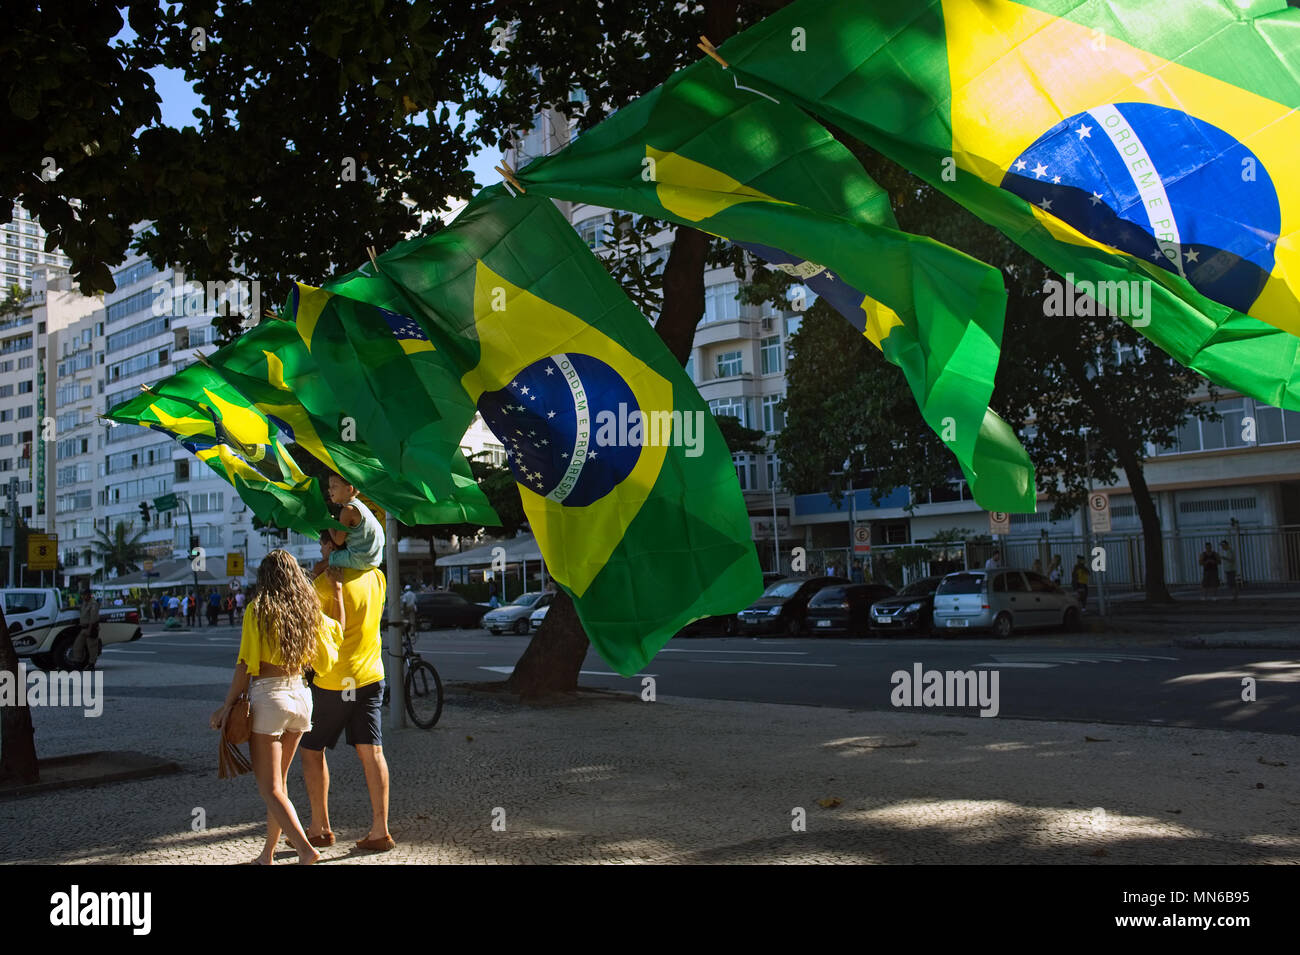 Copacabana, Rio de Janeiro - 17. April 2016: Street Distributoren verkaufen die Nationale Fahnen von Brasilien während eines Protestes gegen Präsident Dilma Rousseff Stockfoto